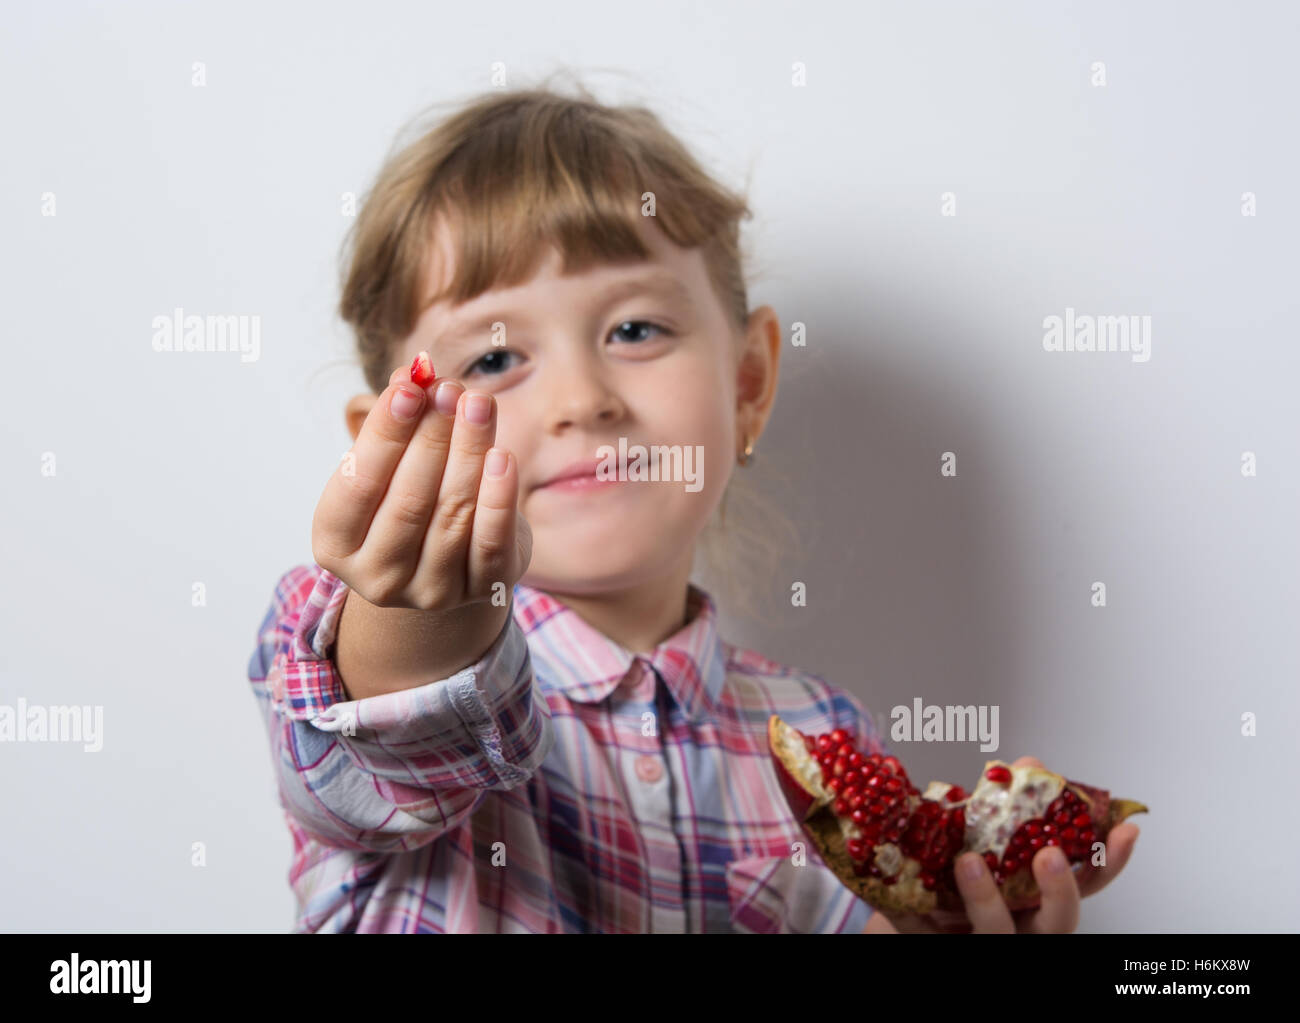 girl eats juicy pomegranate Stock Photo